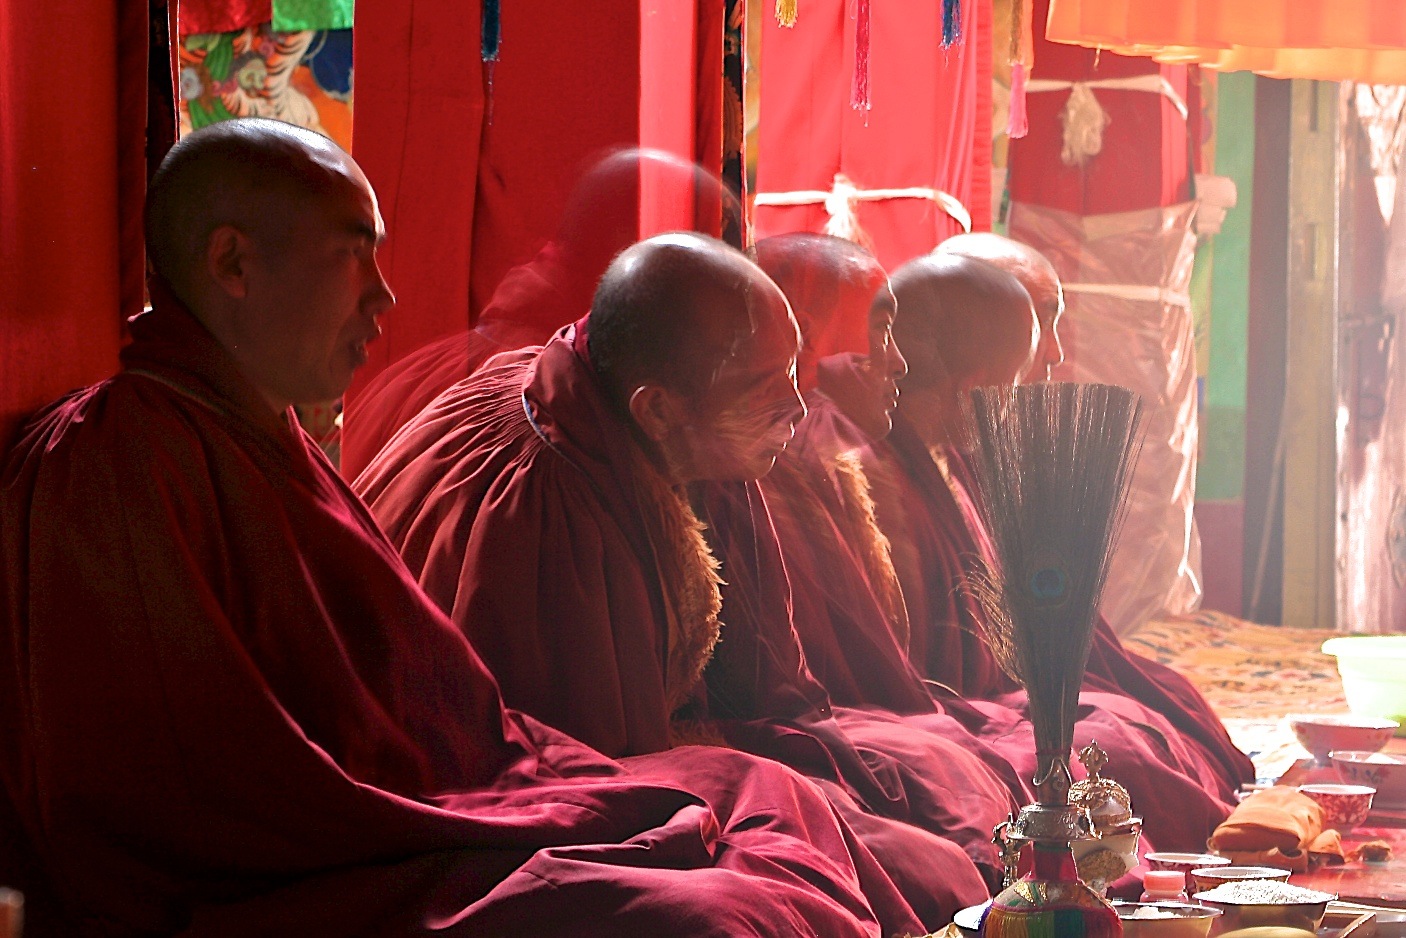 Num templo budista, cinco monges budistas tibetanos, conhecidos por suas carecas lisas, meditam usando seus mantos grenas, estão sentados com pernas cruzadas, um ao lado do outro, na posição tradicional budista,